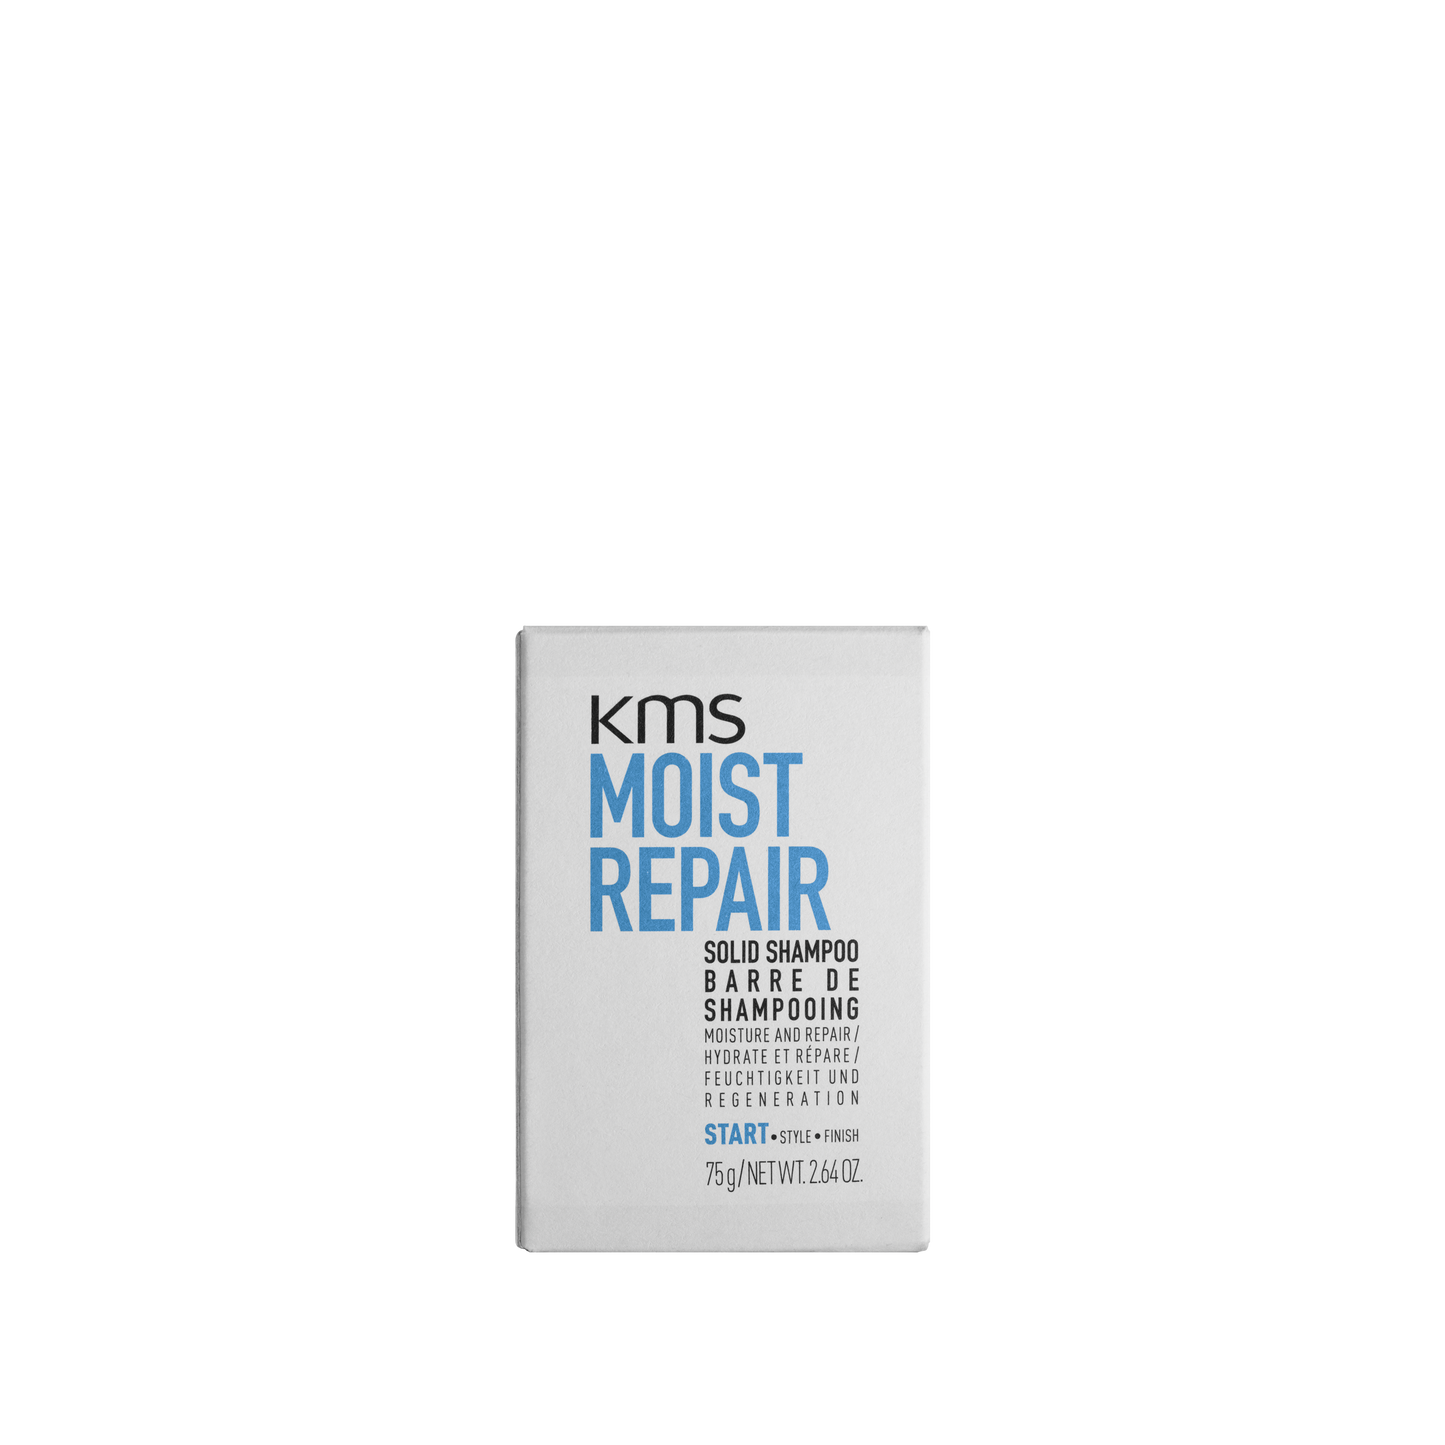 KMS MOISTREPAIR Solid Shampoo75g